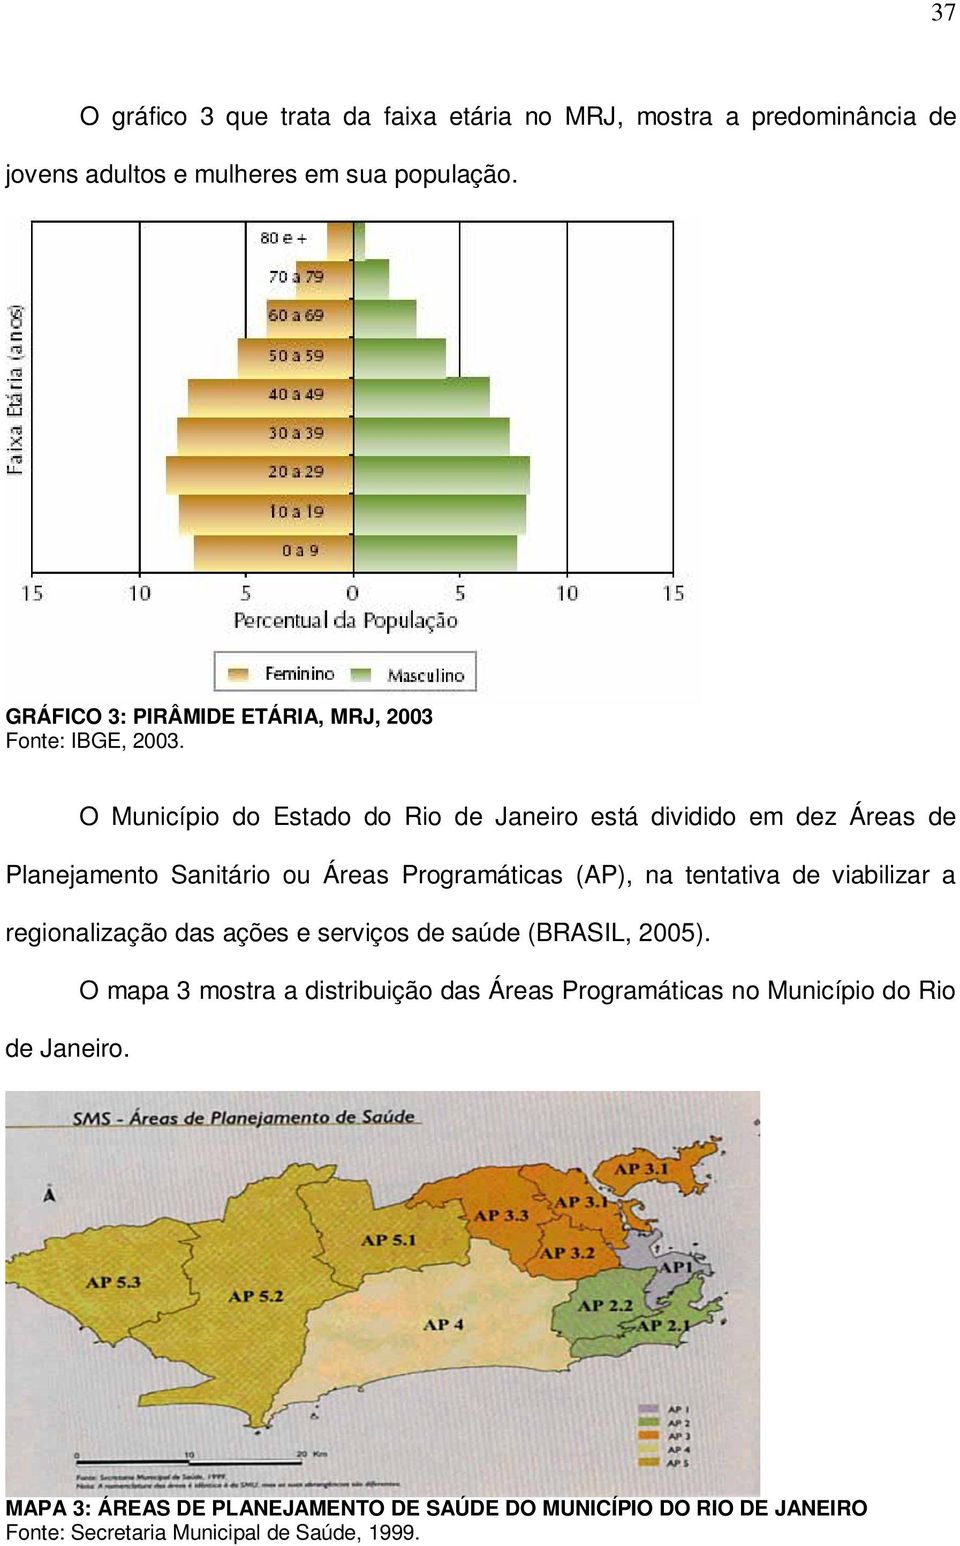 O Município do Estado do Rio de Janeiro está dividido em dez Áreas de Planejamento Sanitário ou Áreas Programáticas (AP), na tentativa de